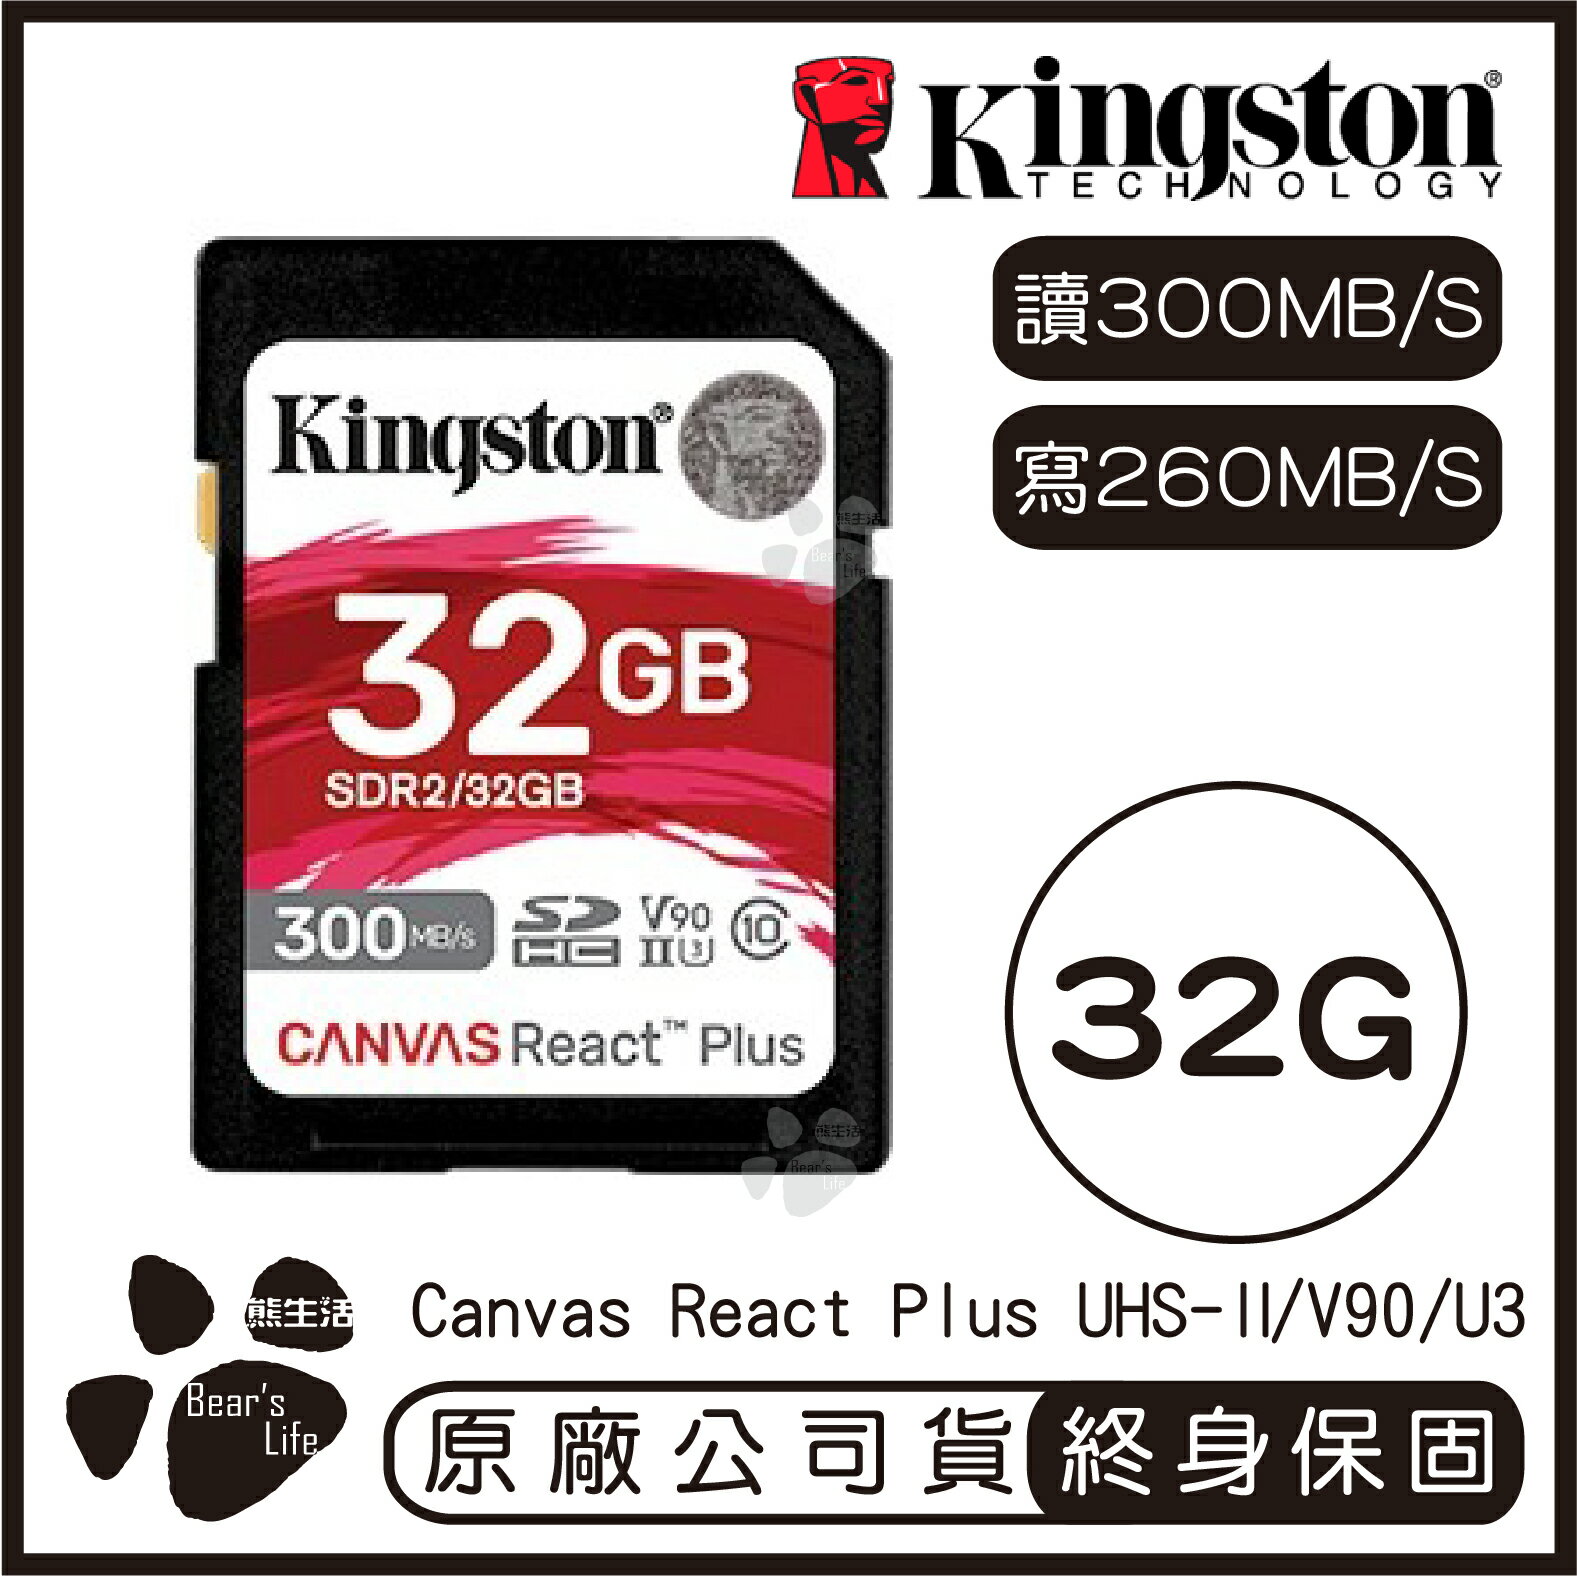 【最高22%點數】【Kingston金士頓】Canvas React Plus SD記憶卡 32G 讀300MB/s 寫260MB/s【限定樂天APP下單】